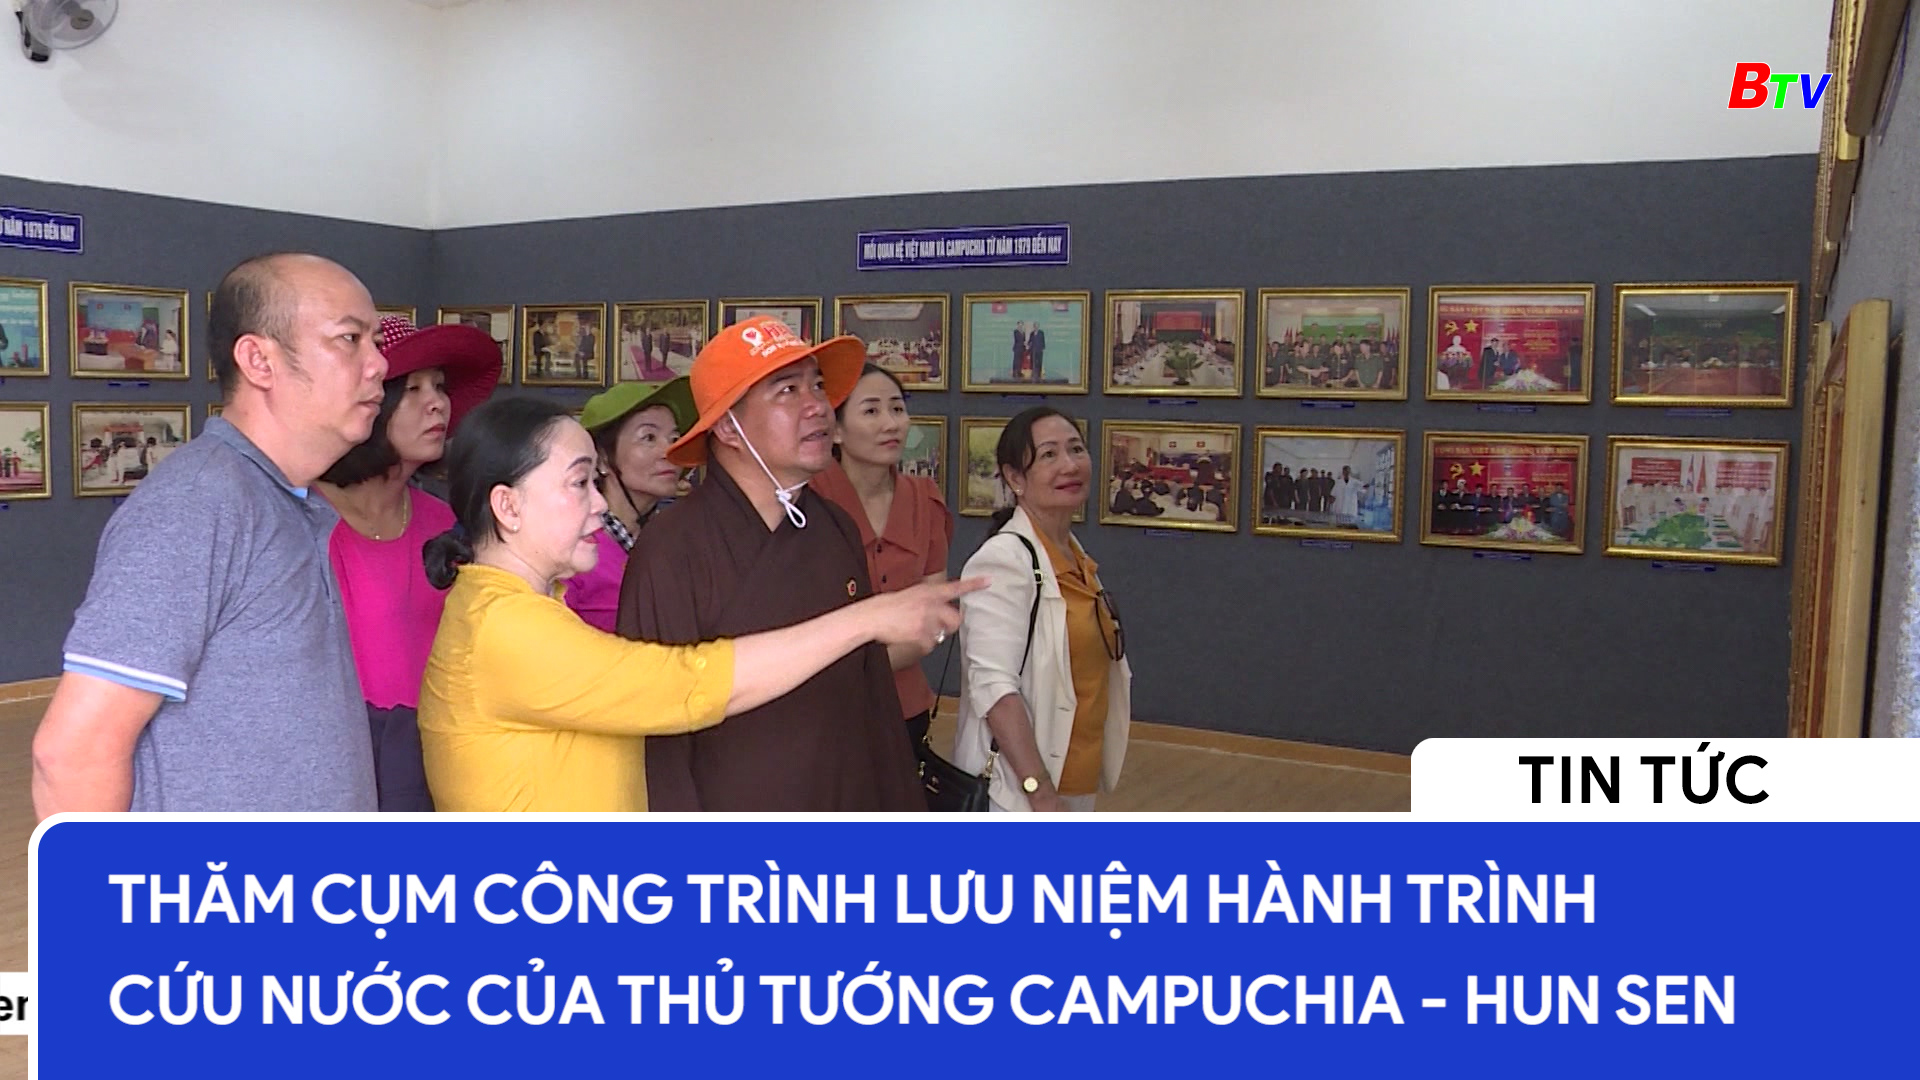 Thăm Cụm công trình lưu niệm hành trình cứu nước của Thủ tướng Campuchia - Hun Sen